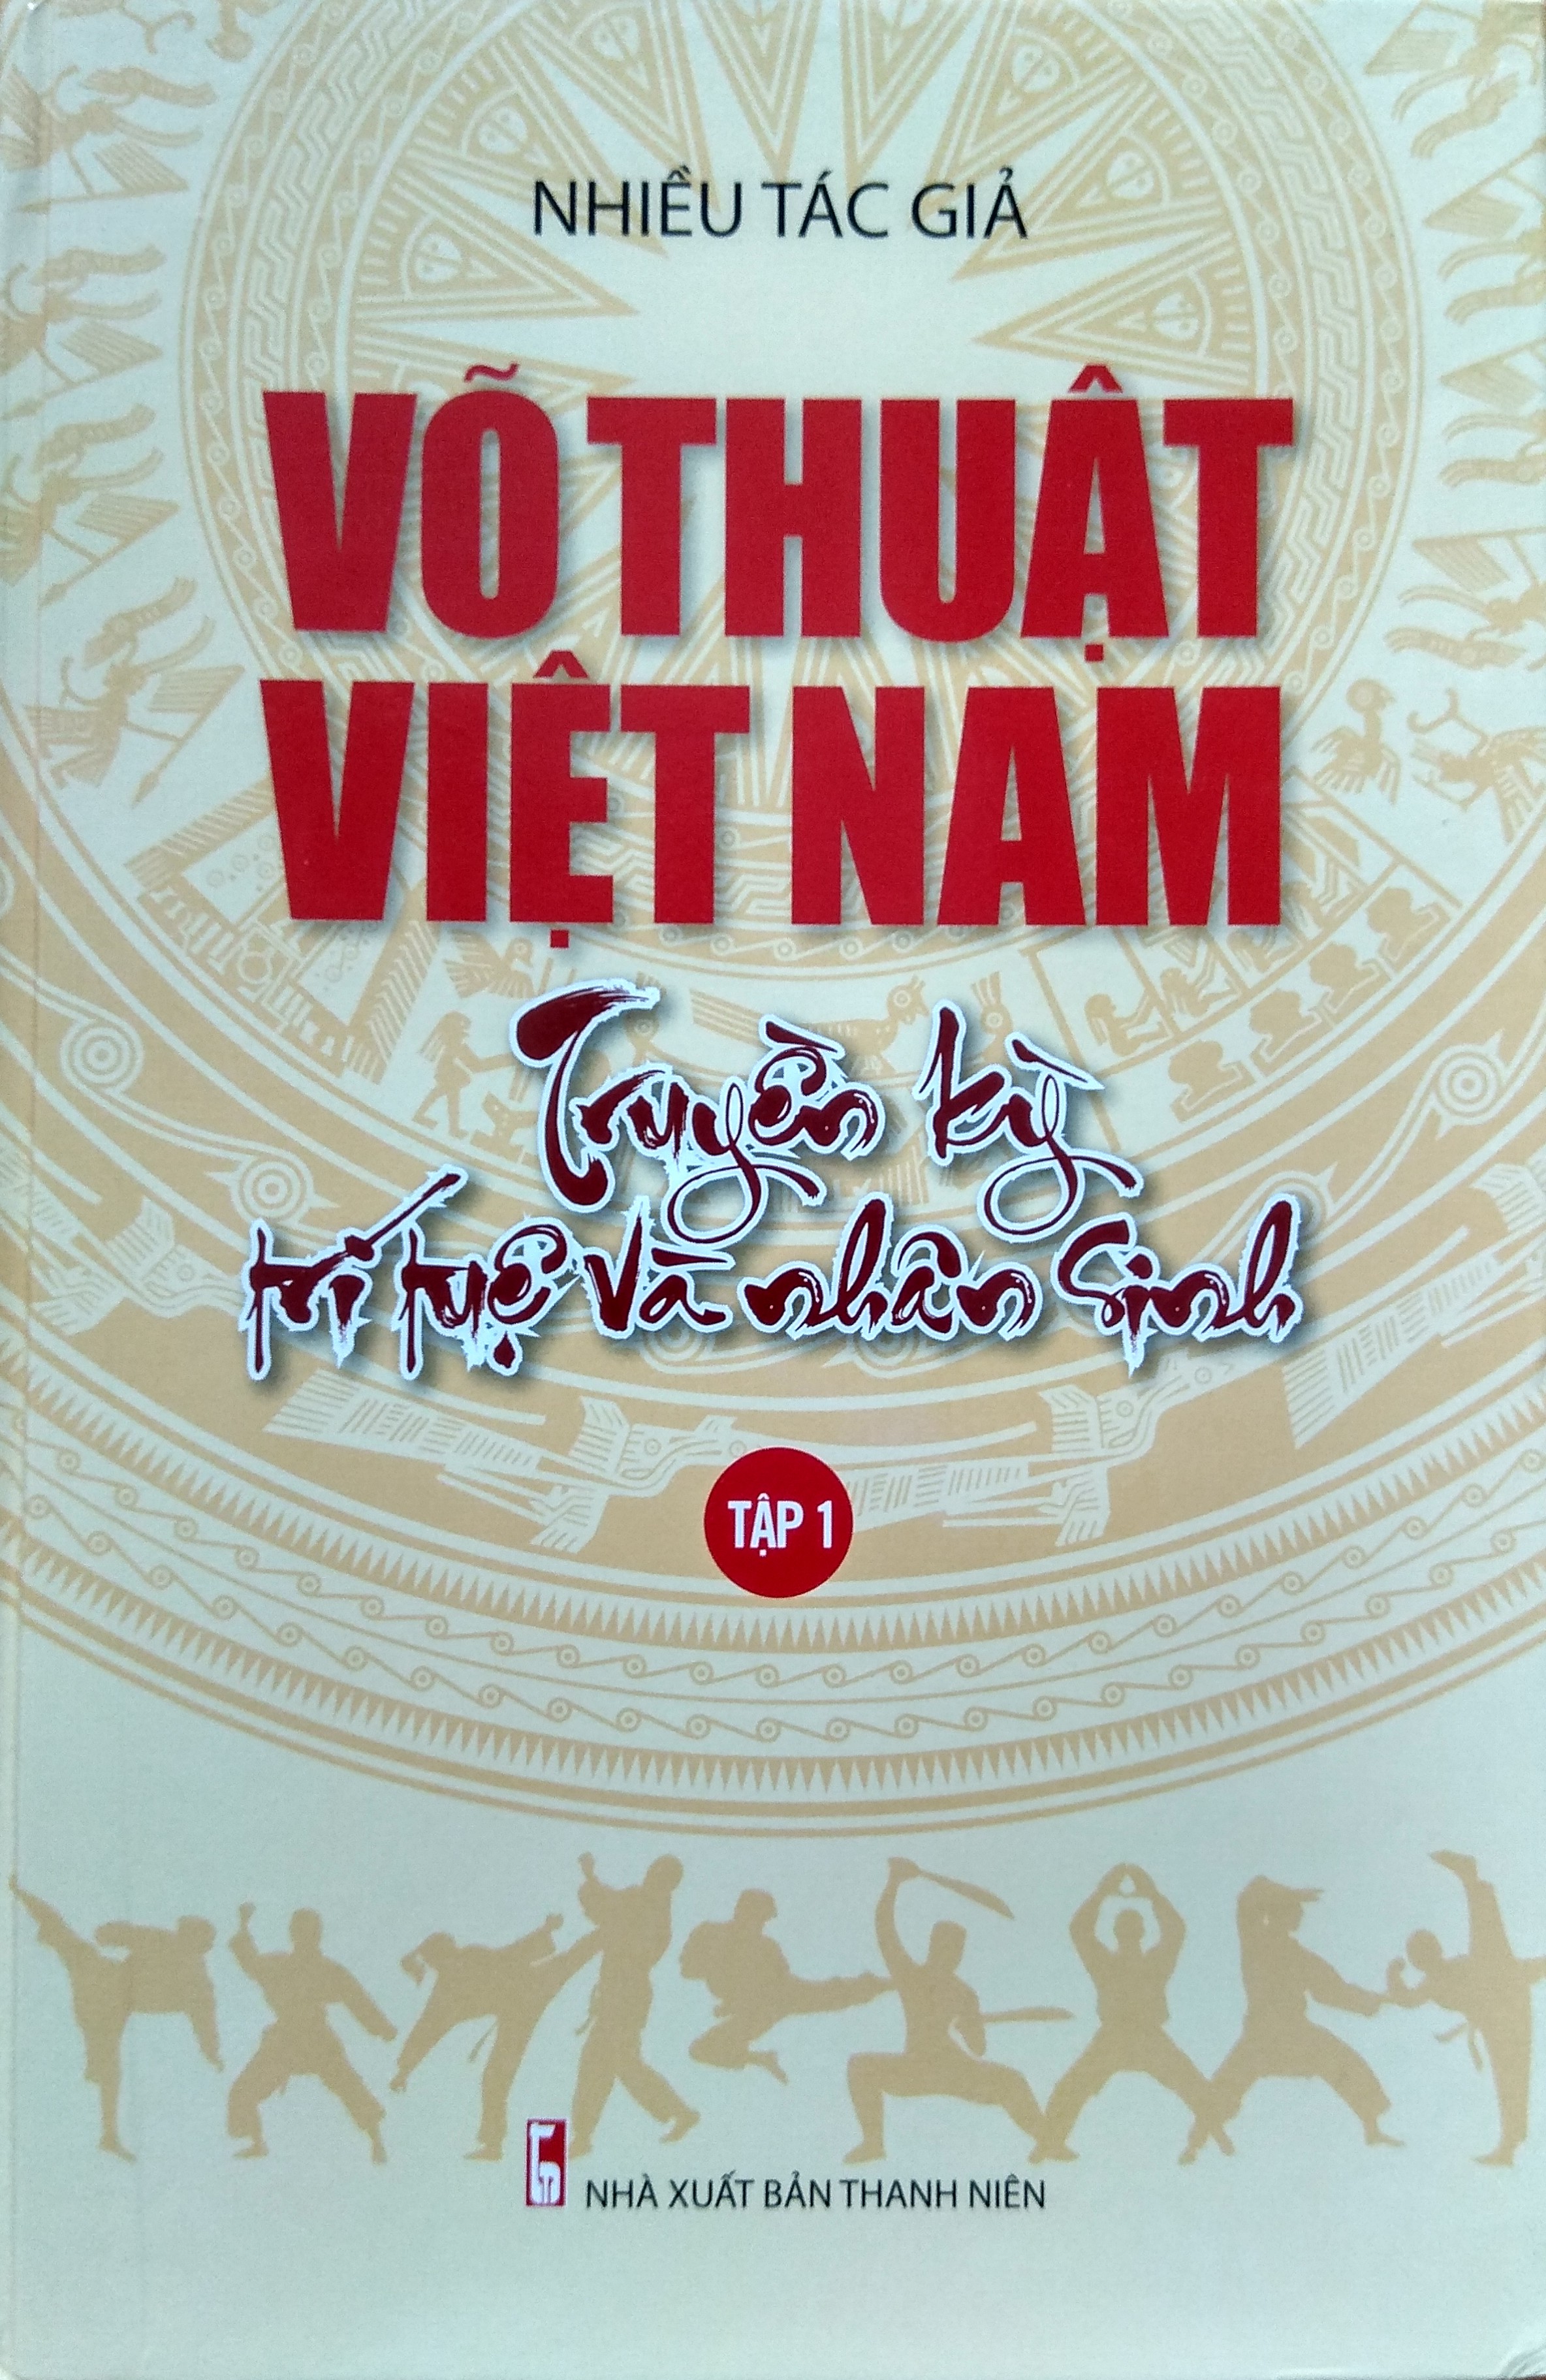 Võ thuật Việt Nam truyền kỳ trí tuệ và nhân sinh